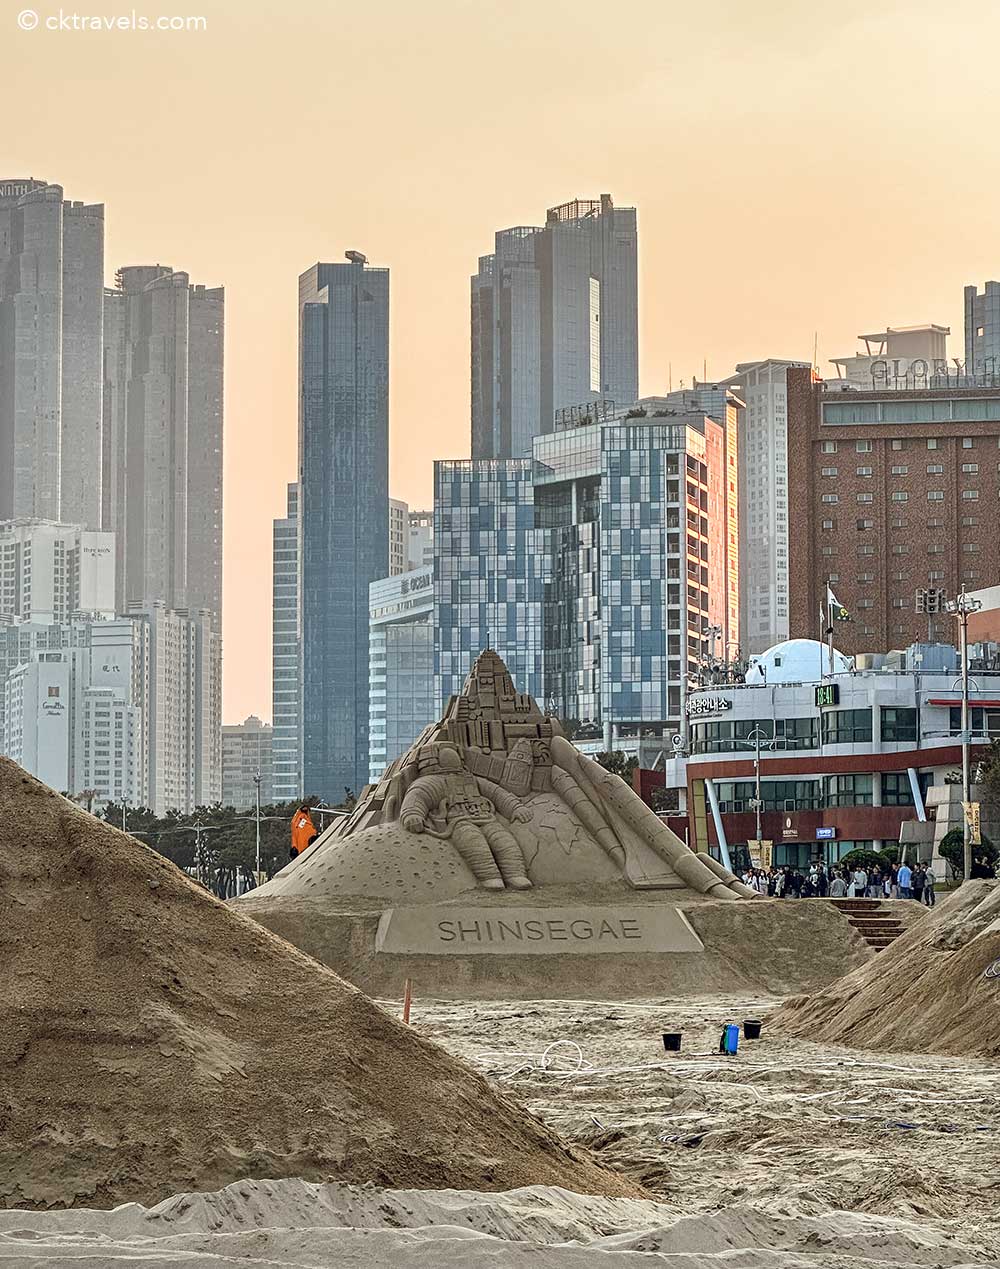 Busan Haeundae Beach Sand Festival / sandcastle competition South Korea